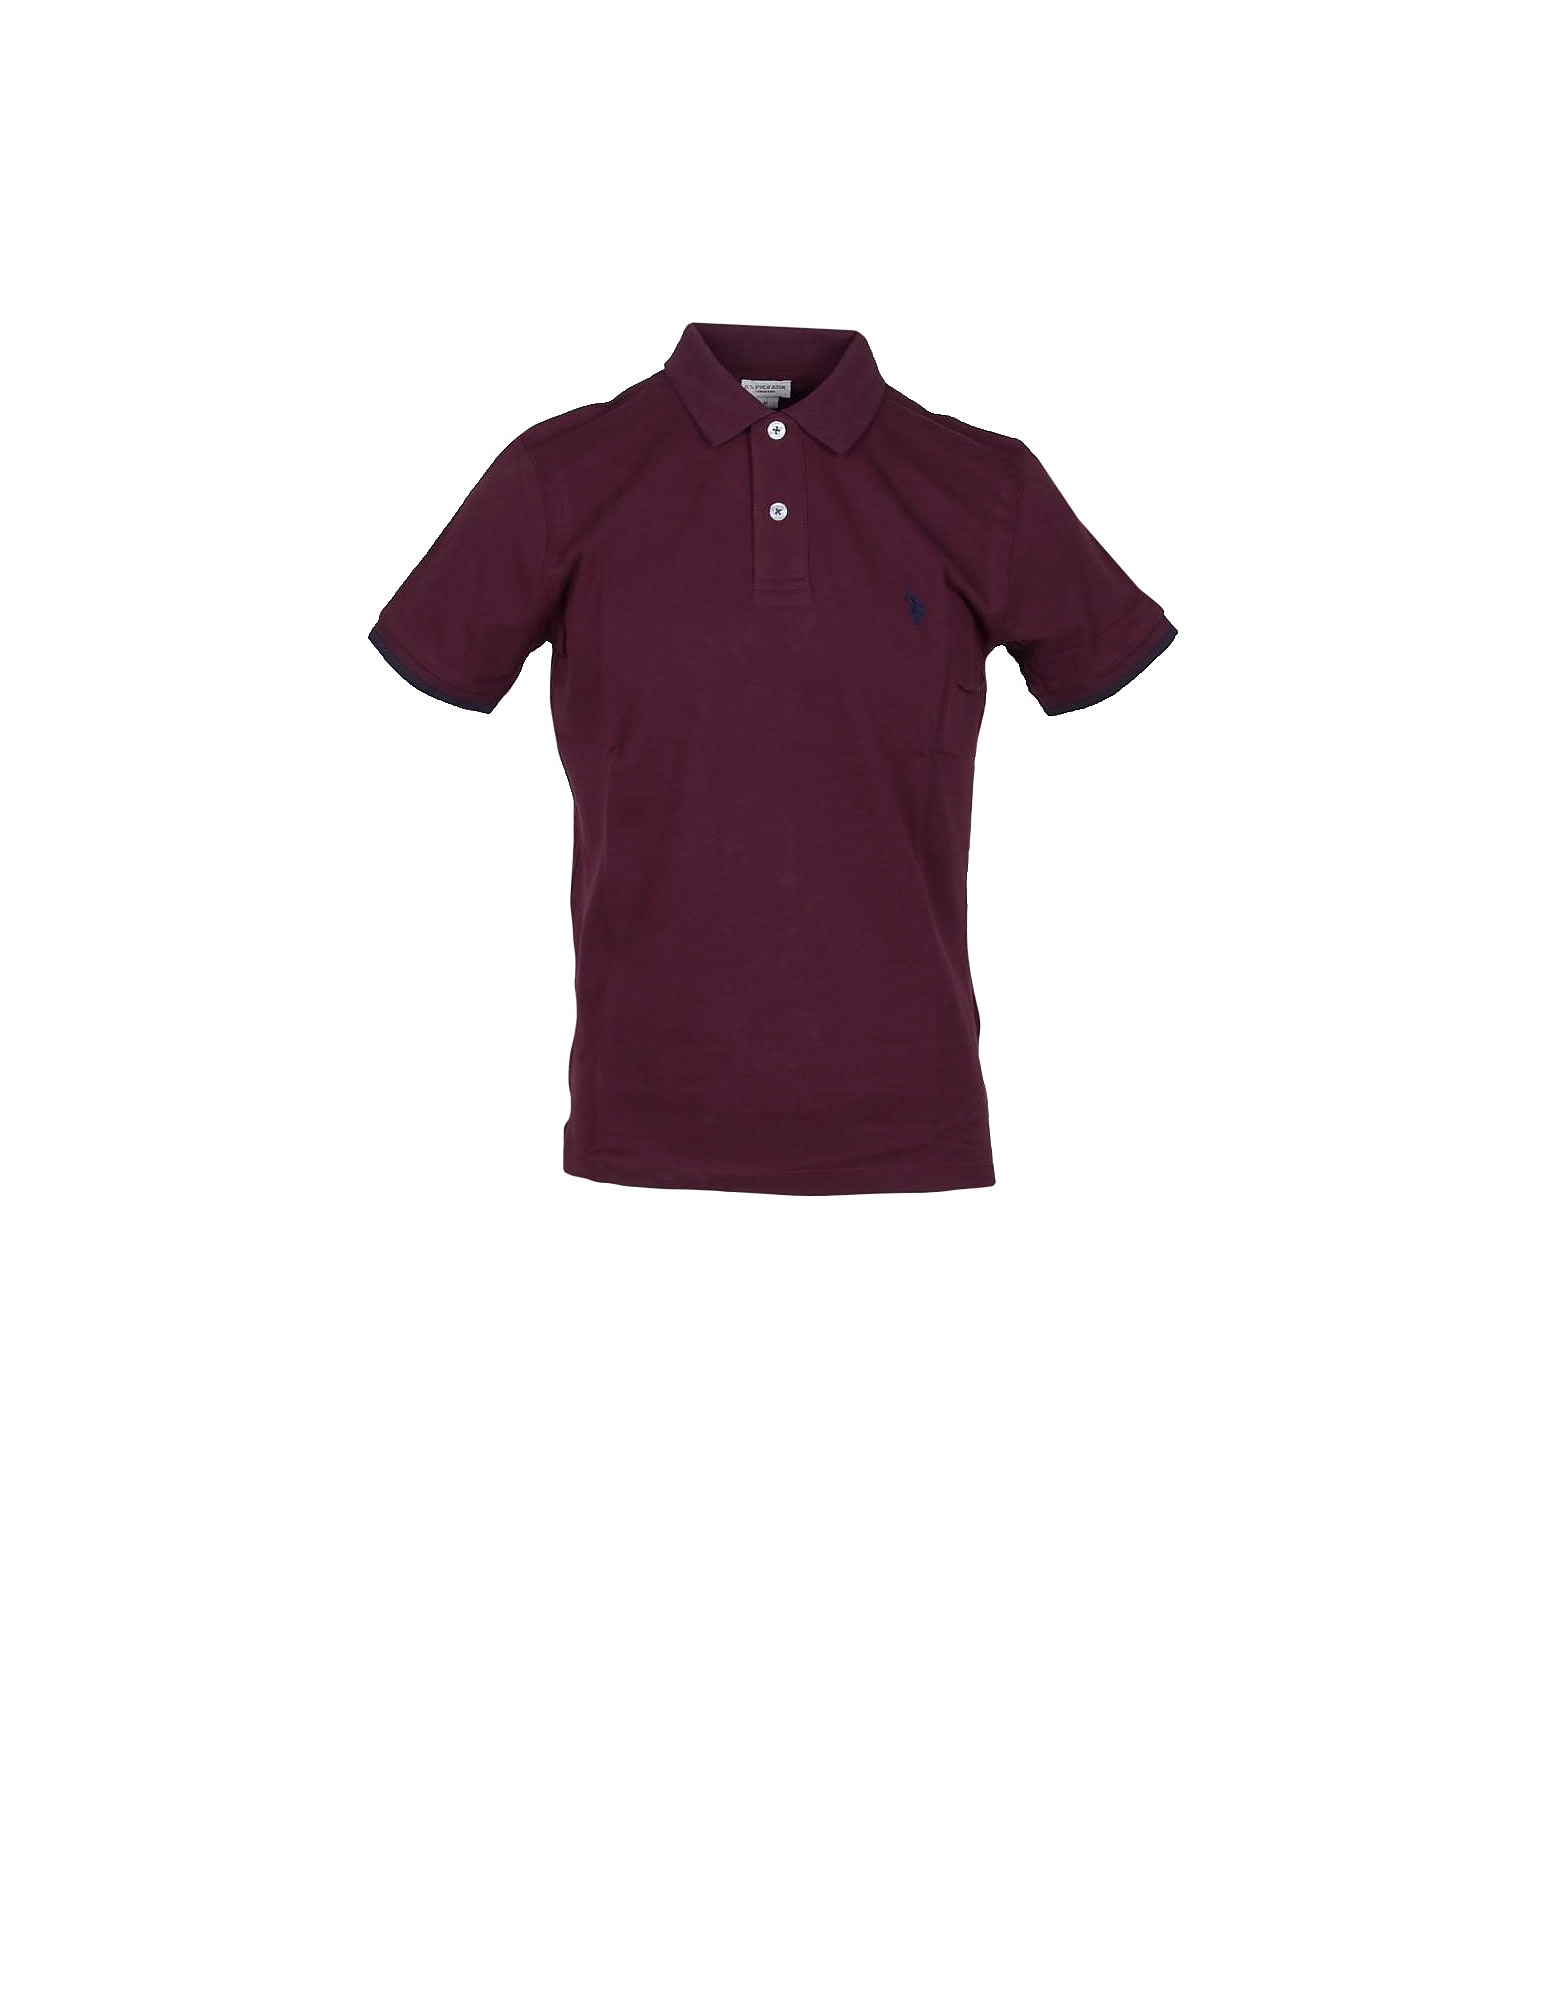 U.s. Polo Assn. Burgundy Piqué Cotton Mens Polo Shirt